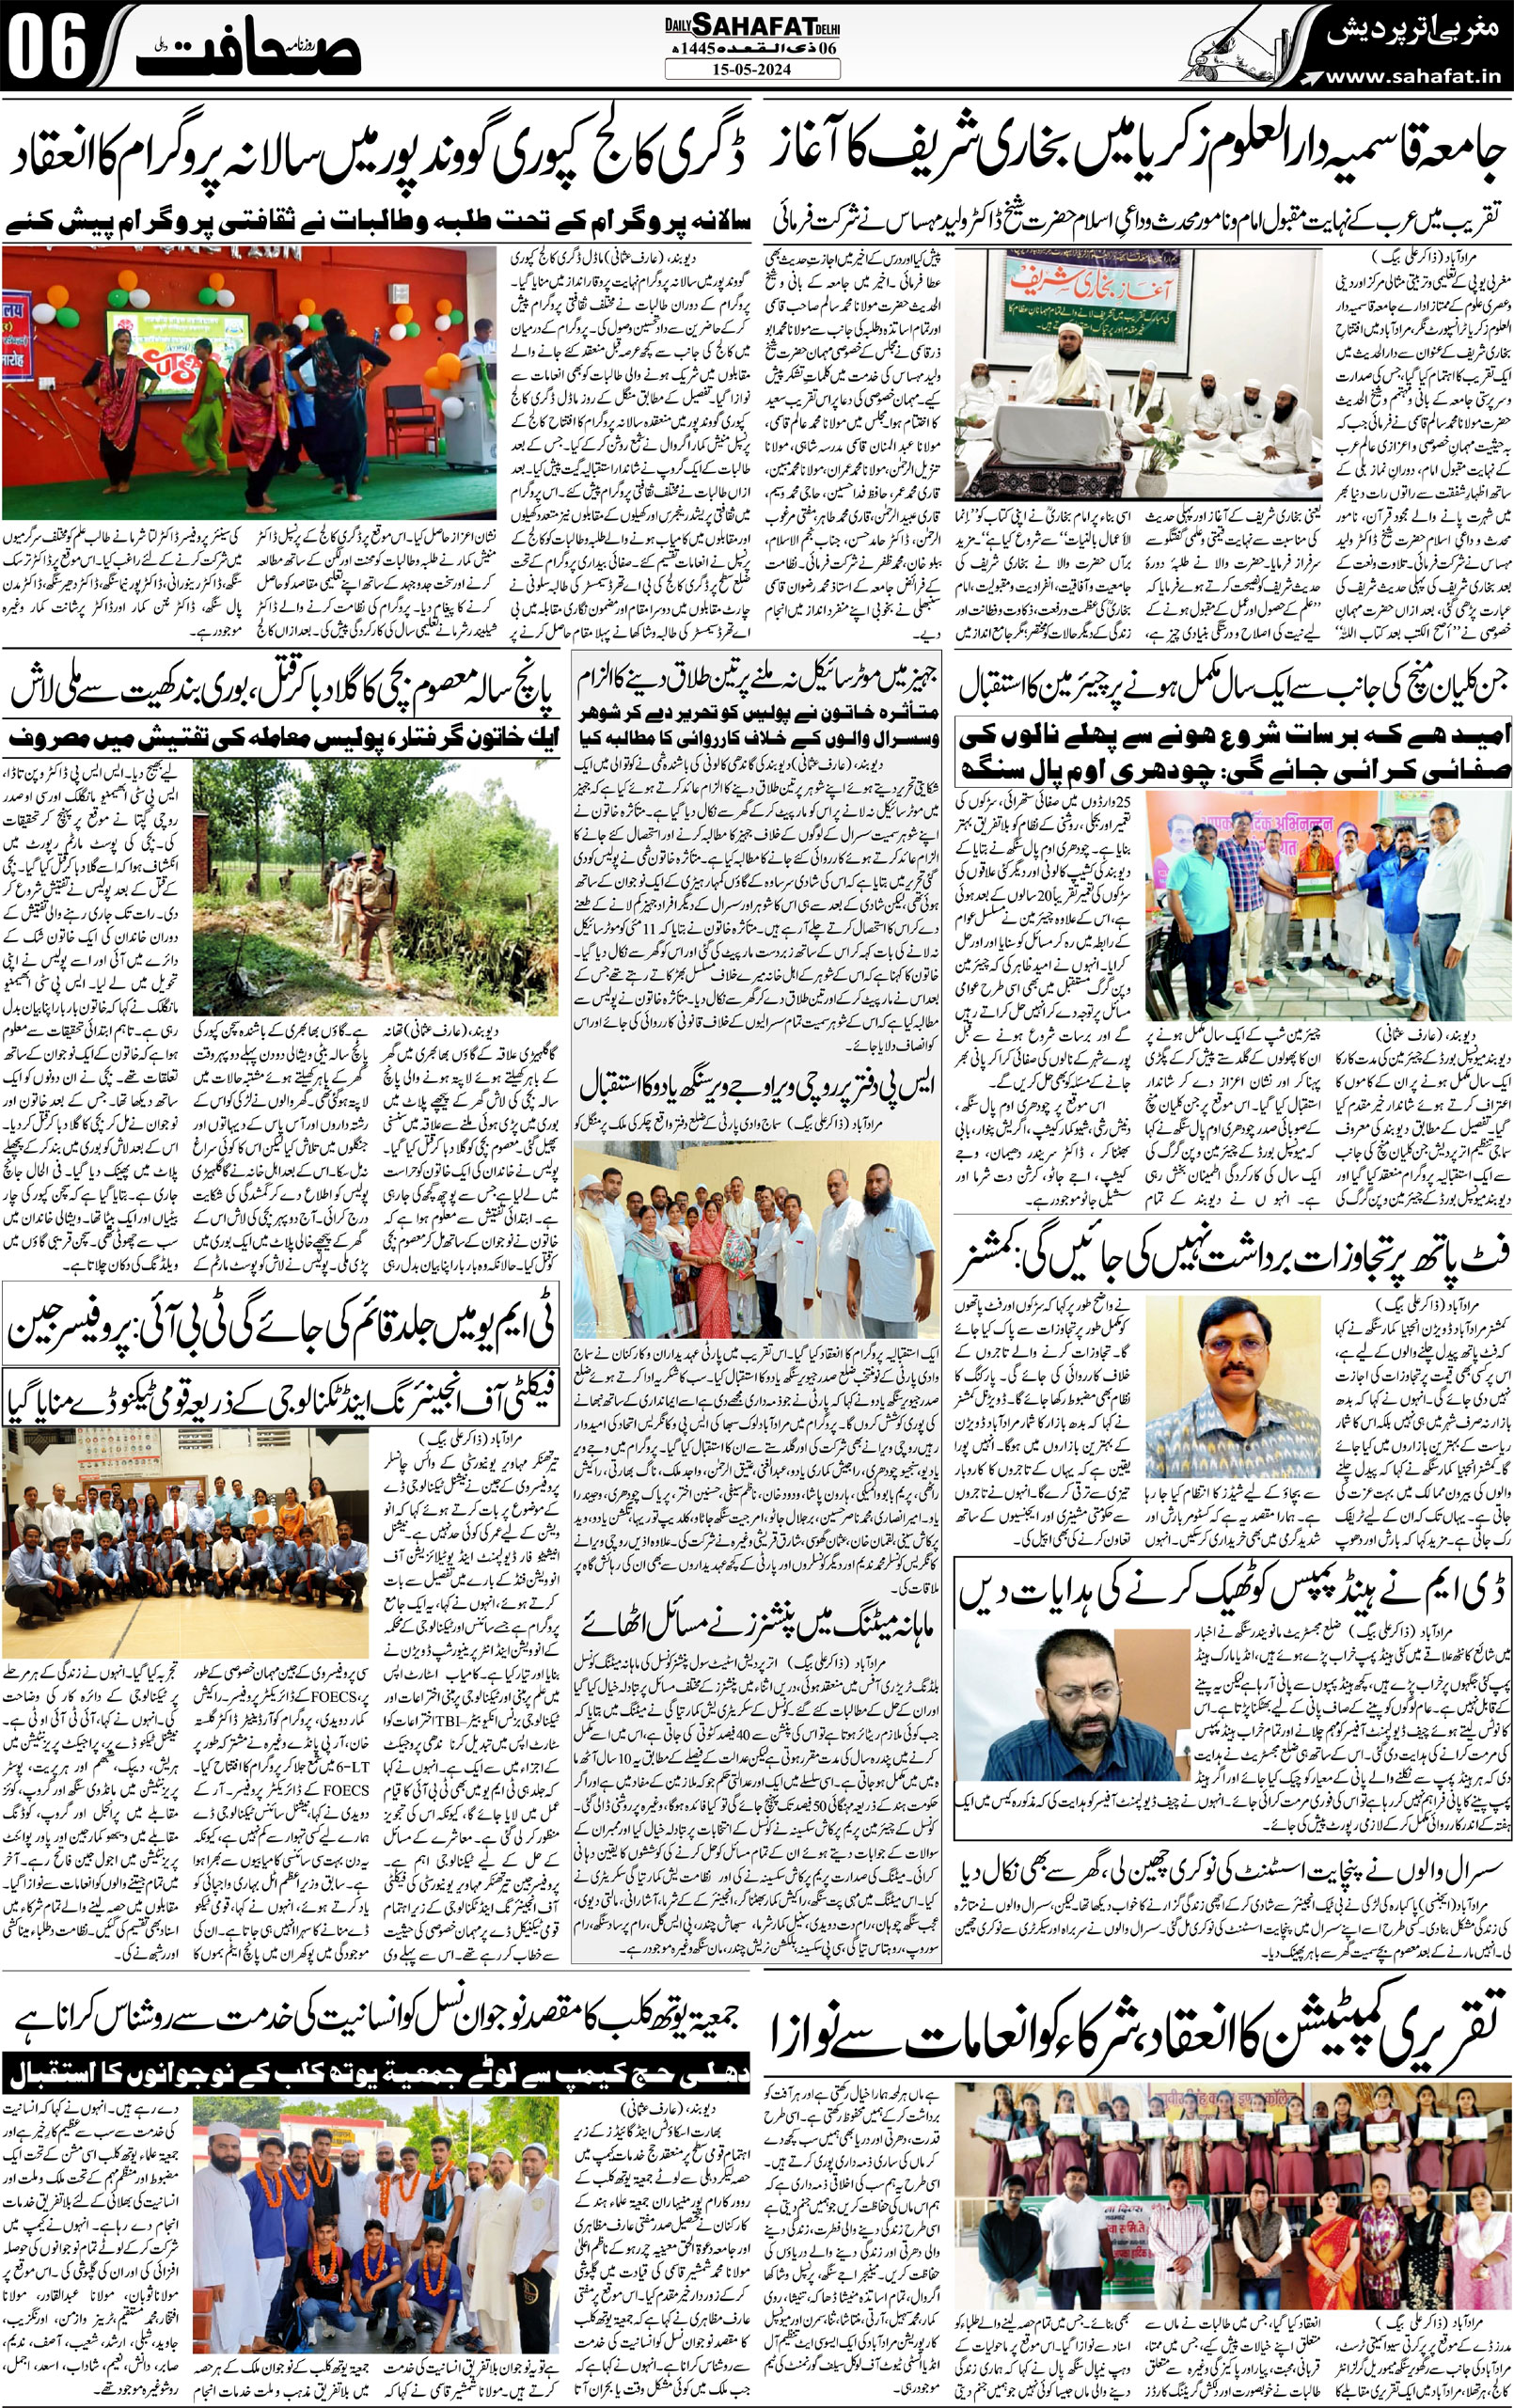 Sahafat Urdu Newspaper, Urdu Media, Publish from Delhi, India, Indian Urdu Media, Urdu 